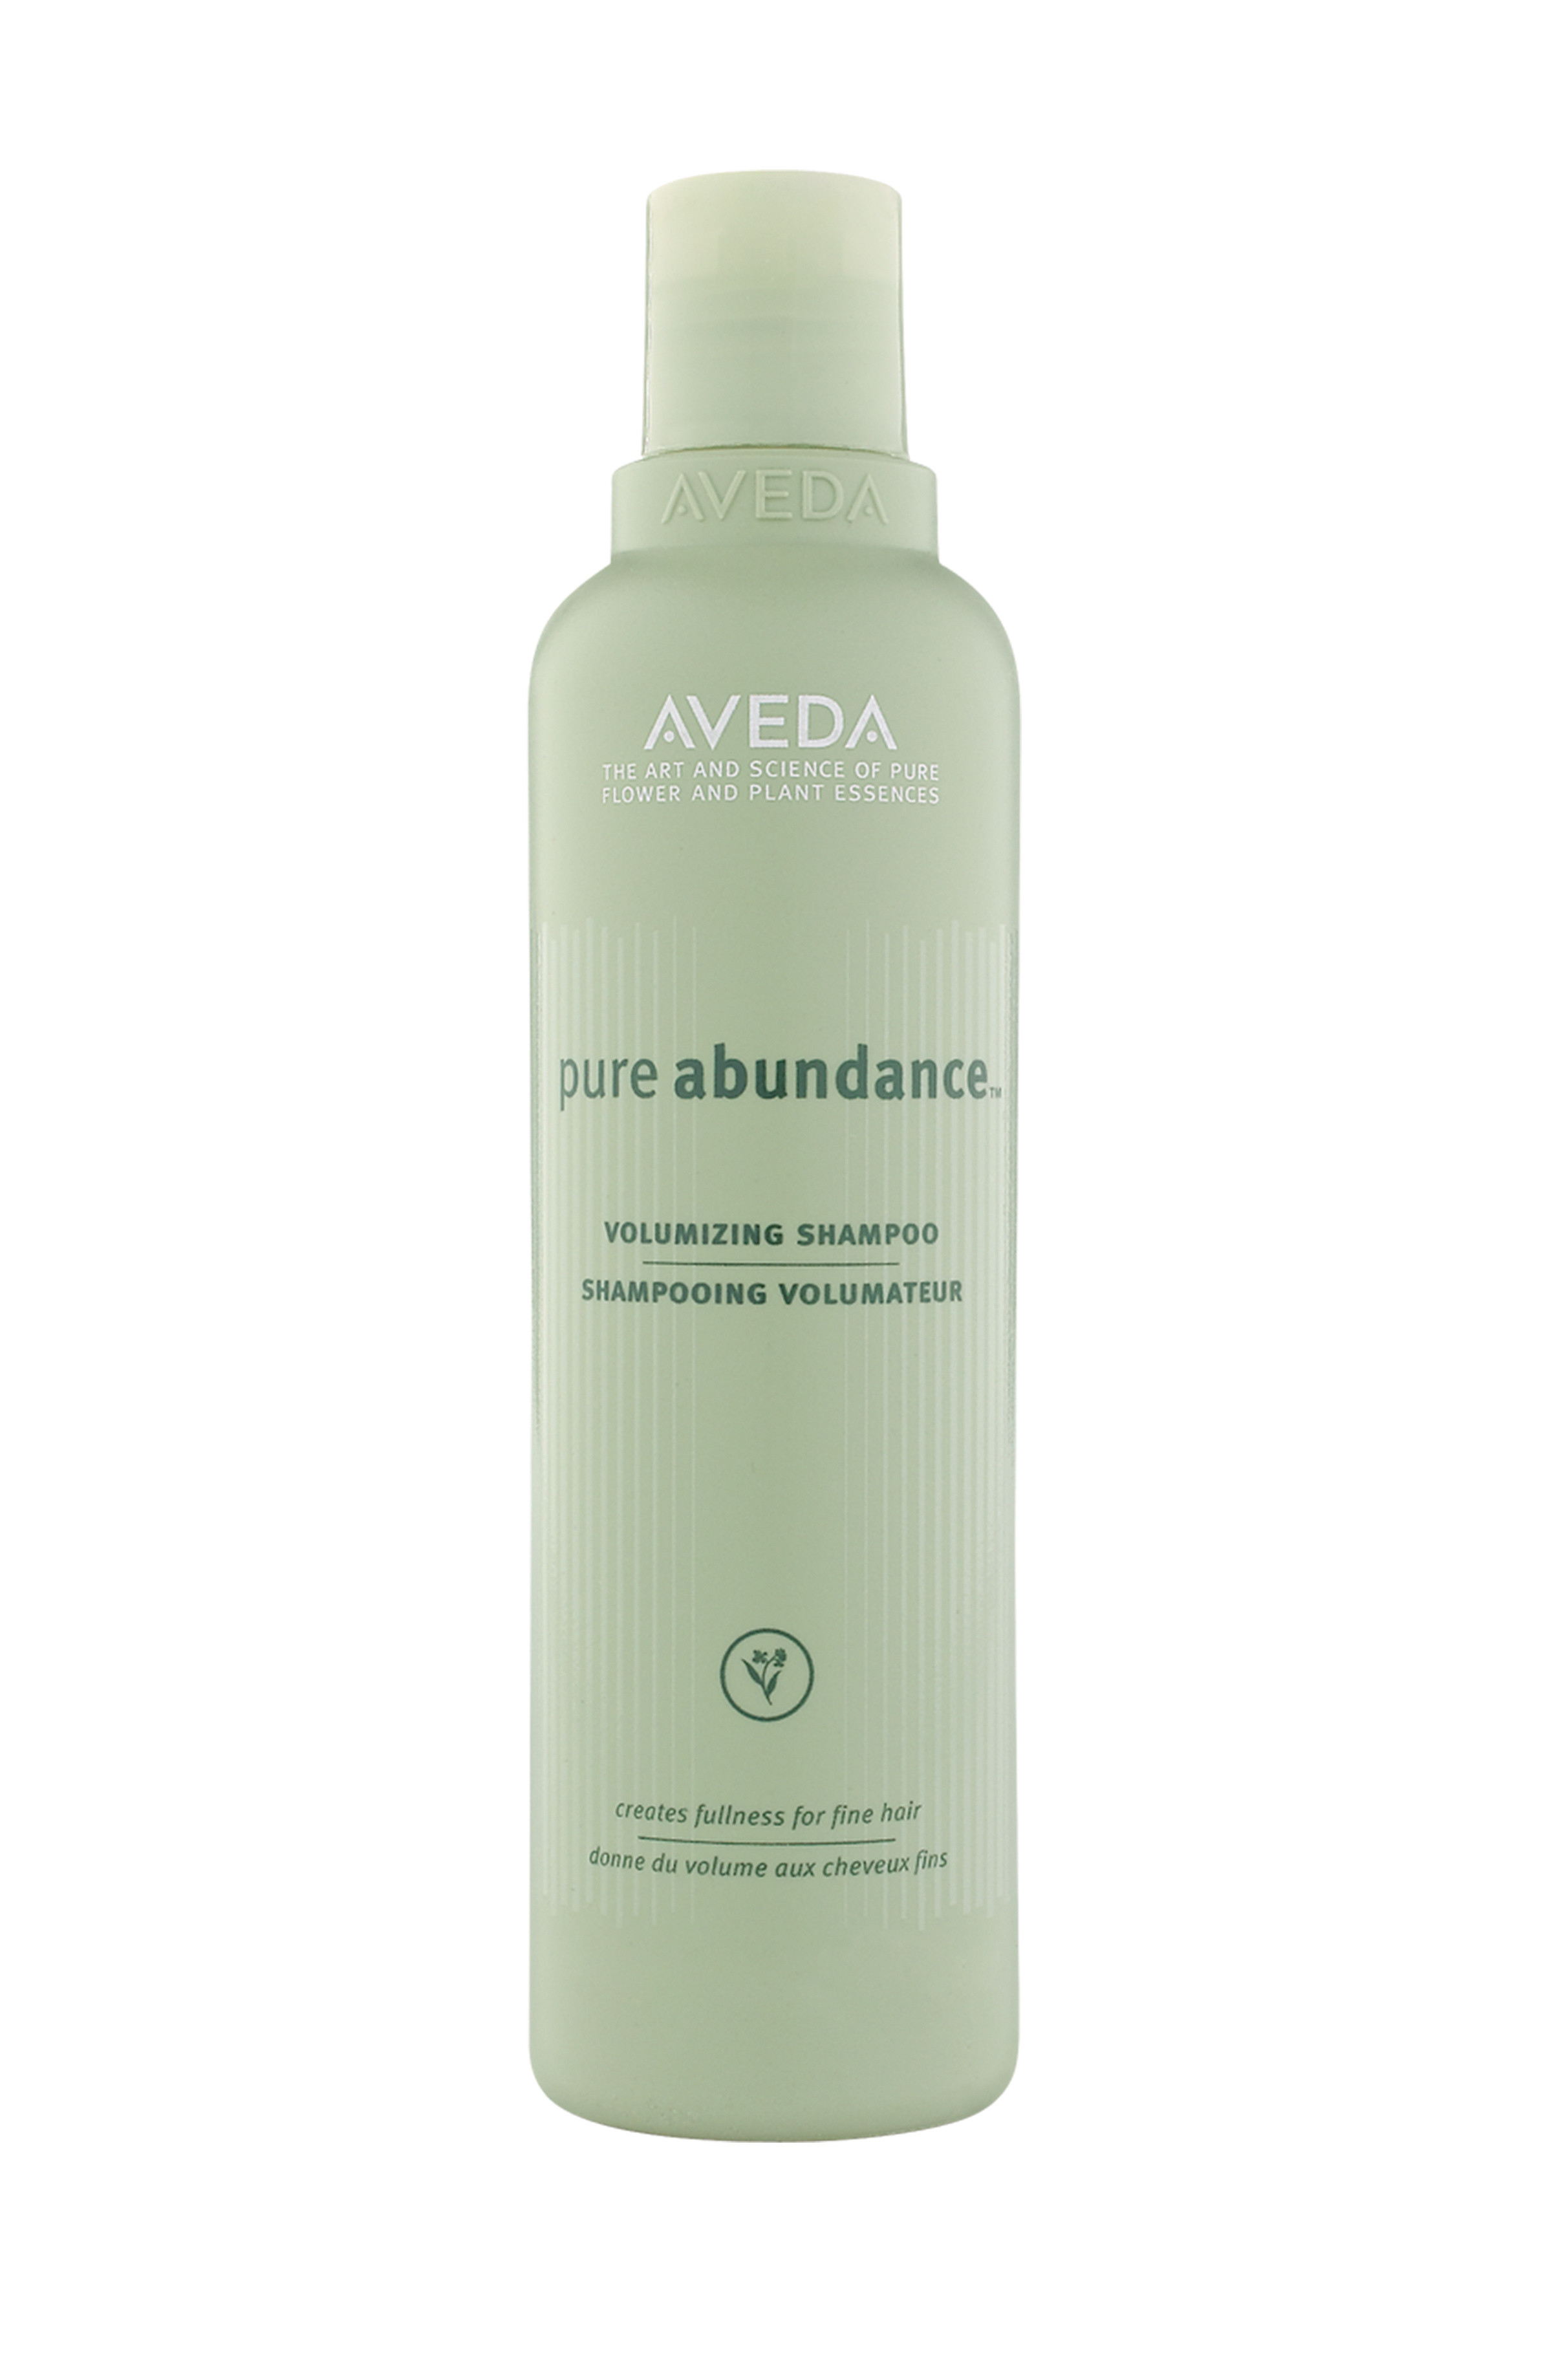 Aveda pure abundance volumizing shampoo 250 ml, Green, large image number 0